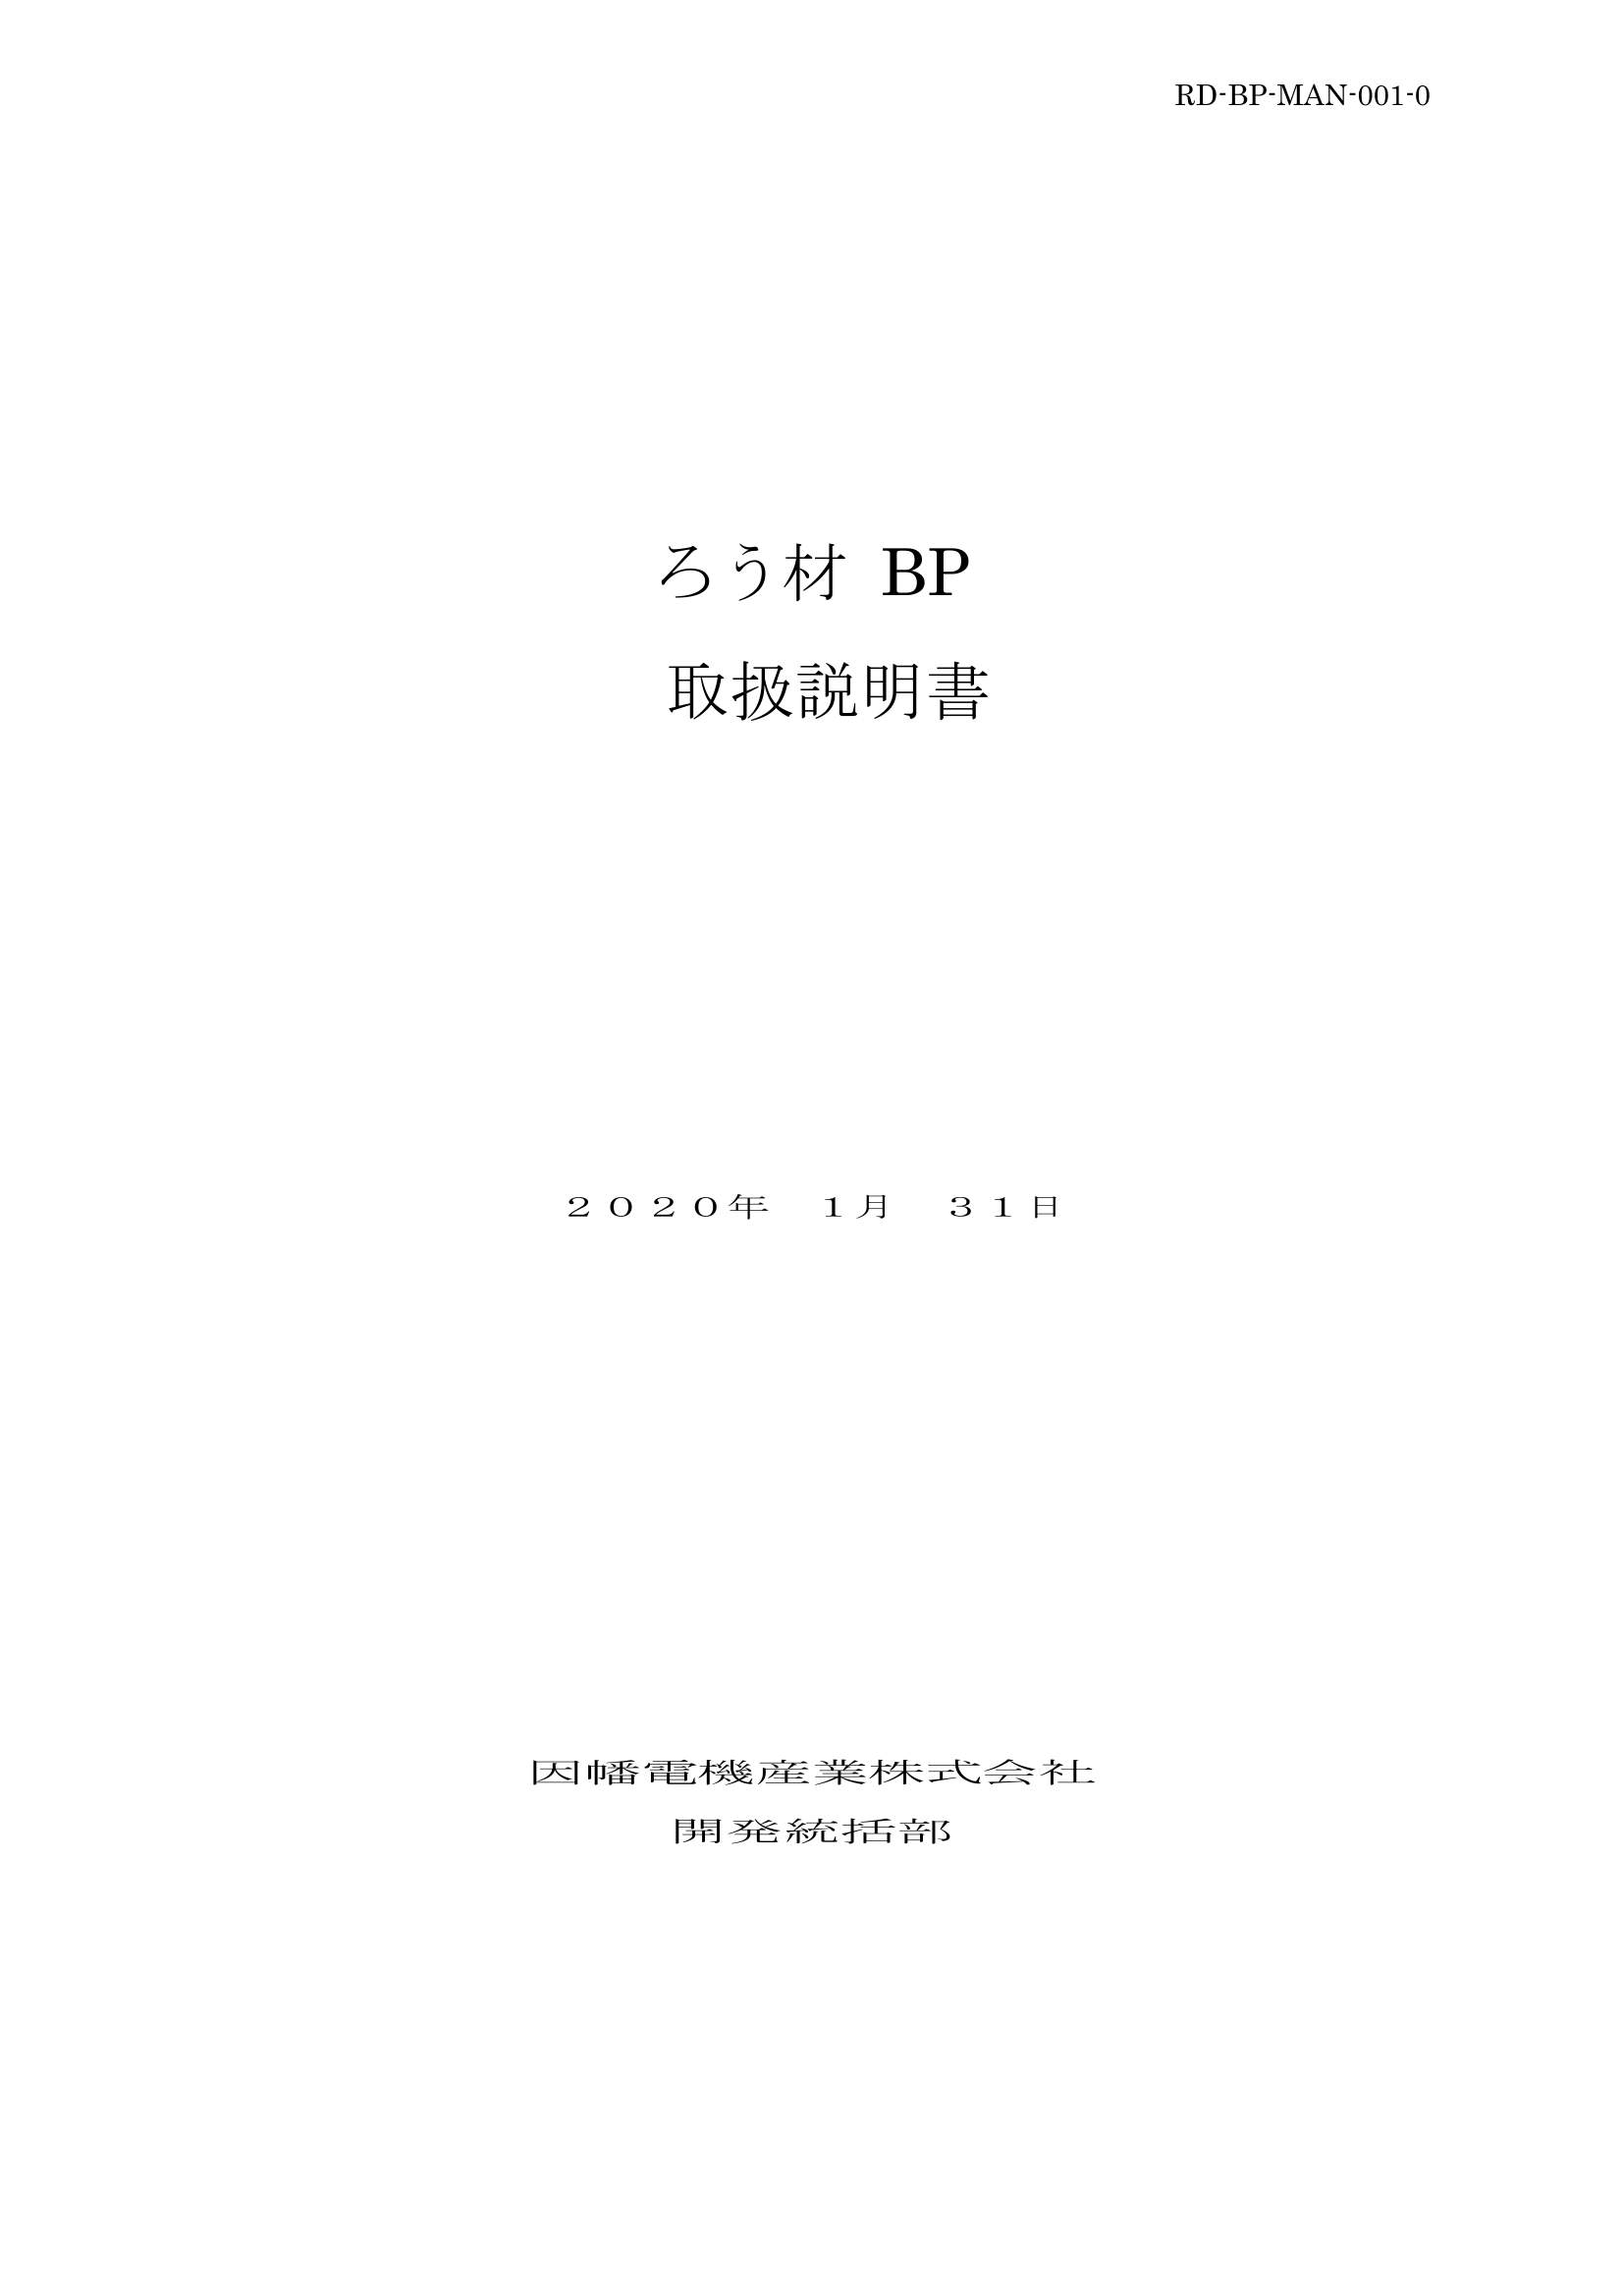 BP_取扱説明書_20200131.pdf